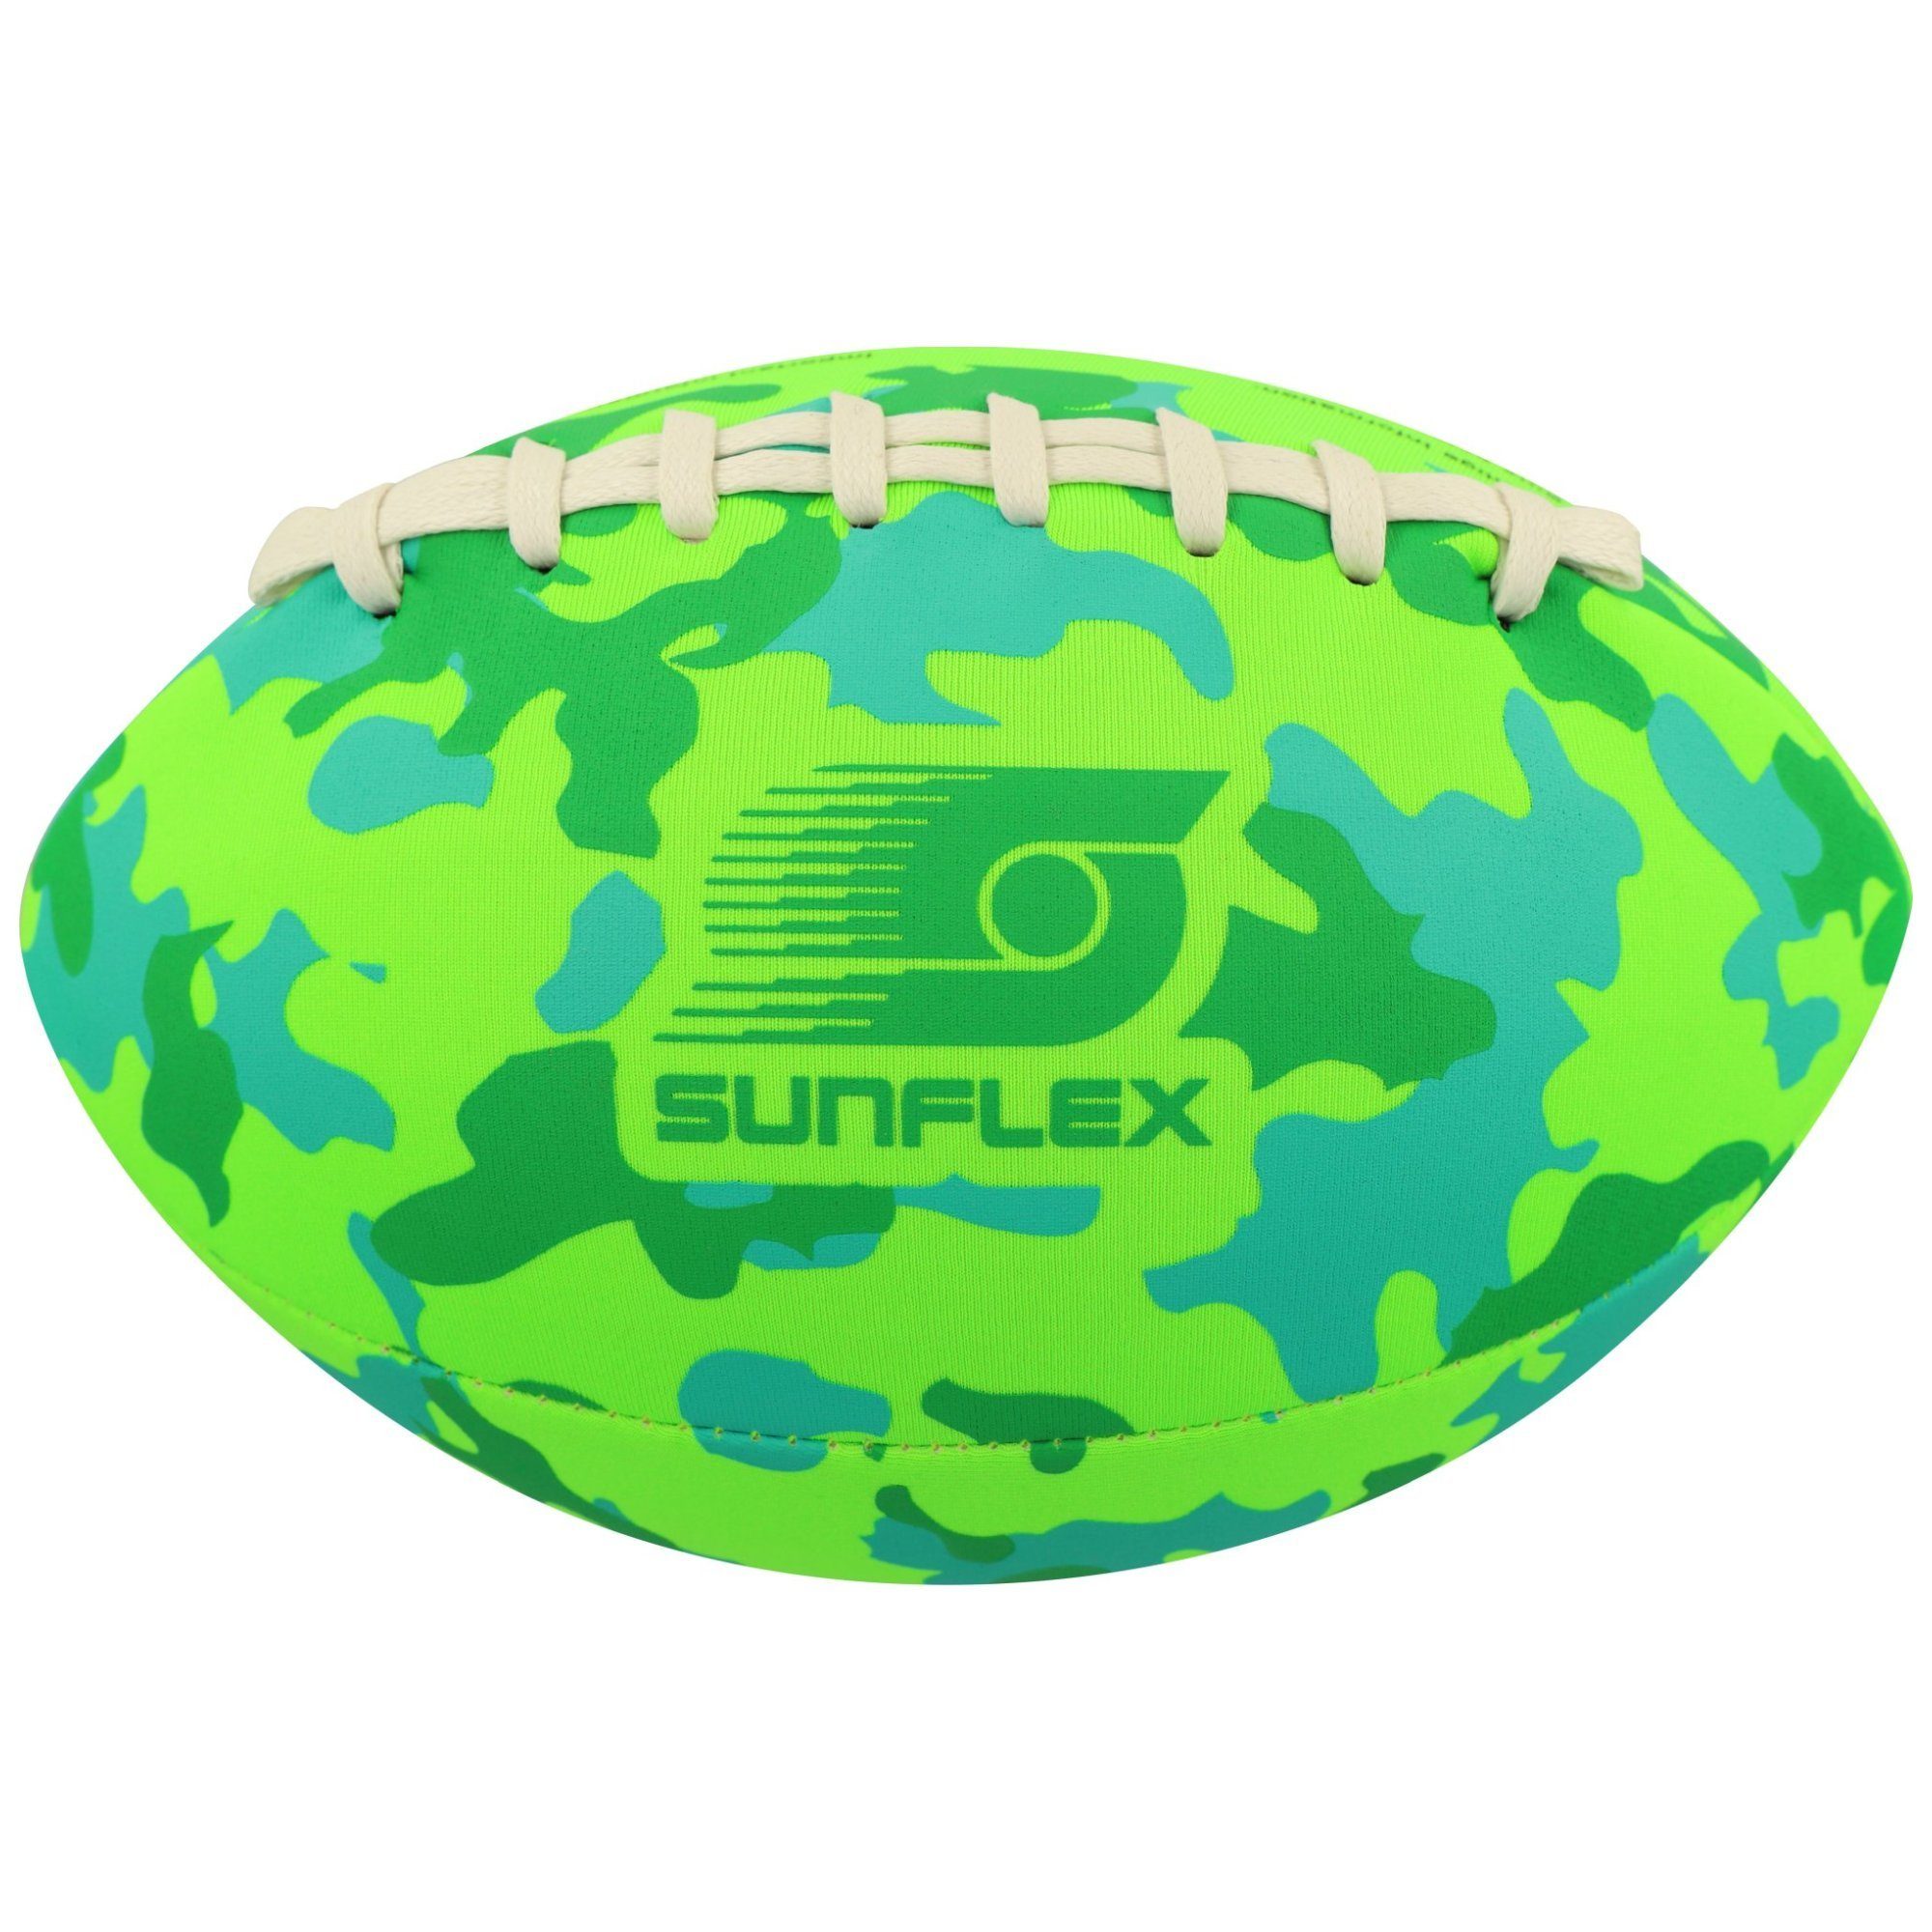 Camo Football Football sunflex grün American Sunflex